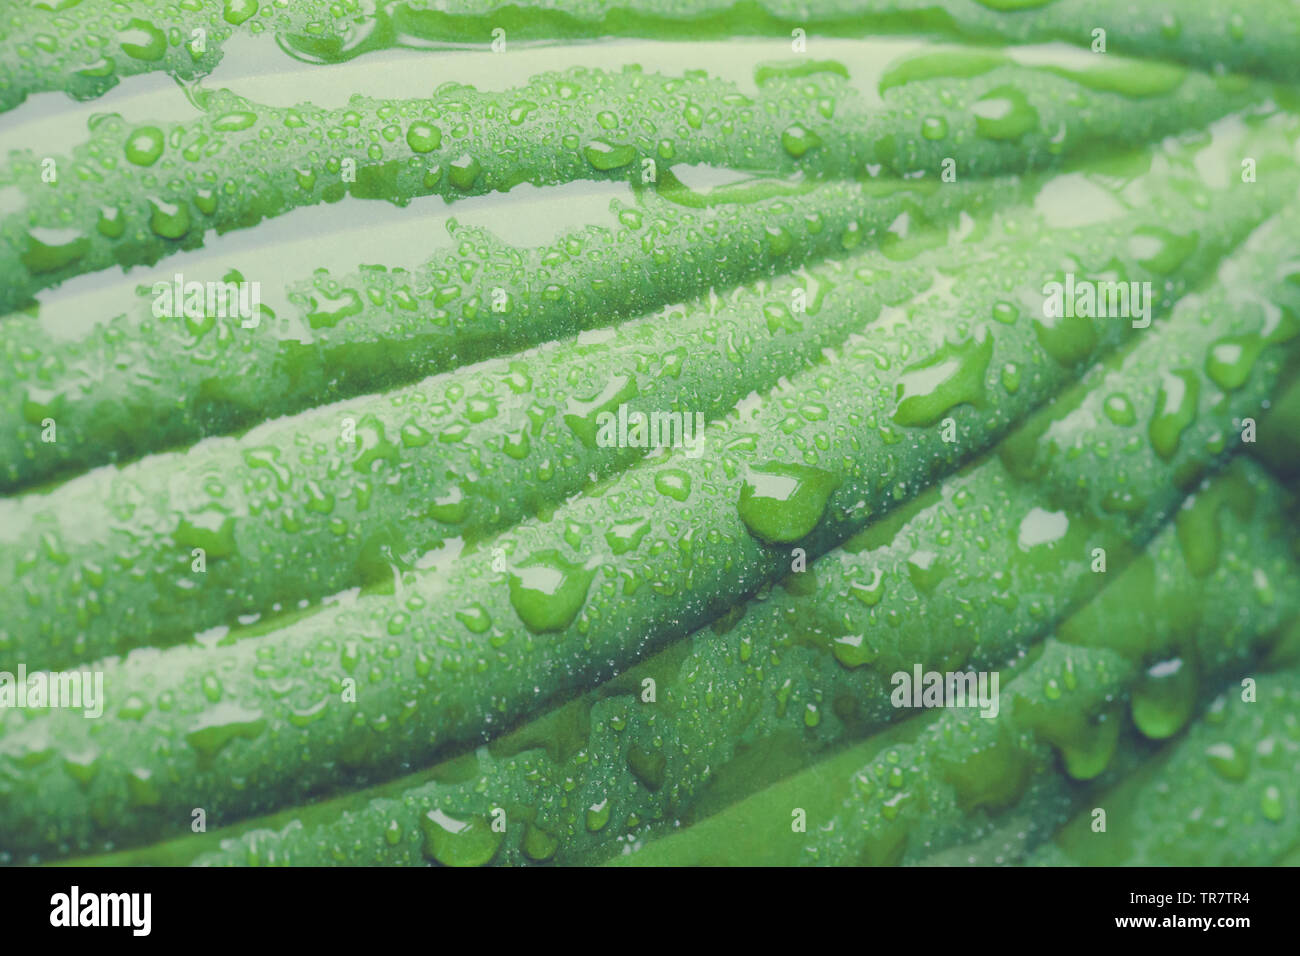 Une vue rapprochée de gouttelettes d'eau sur une feuille de plante Hosta Banque D'Images